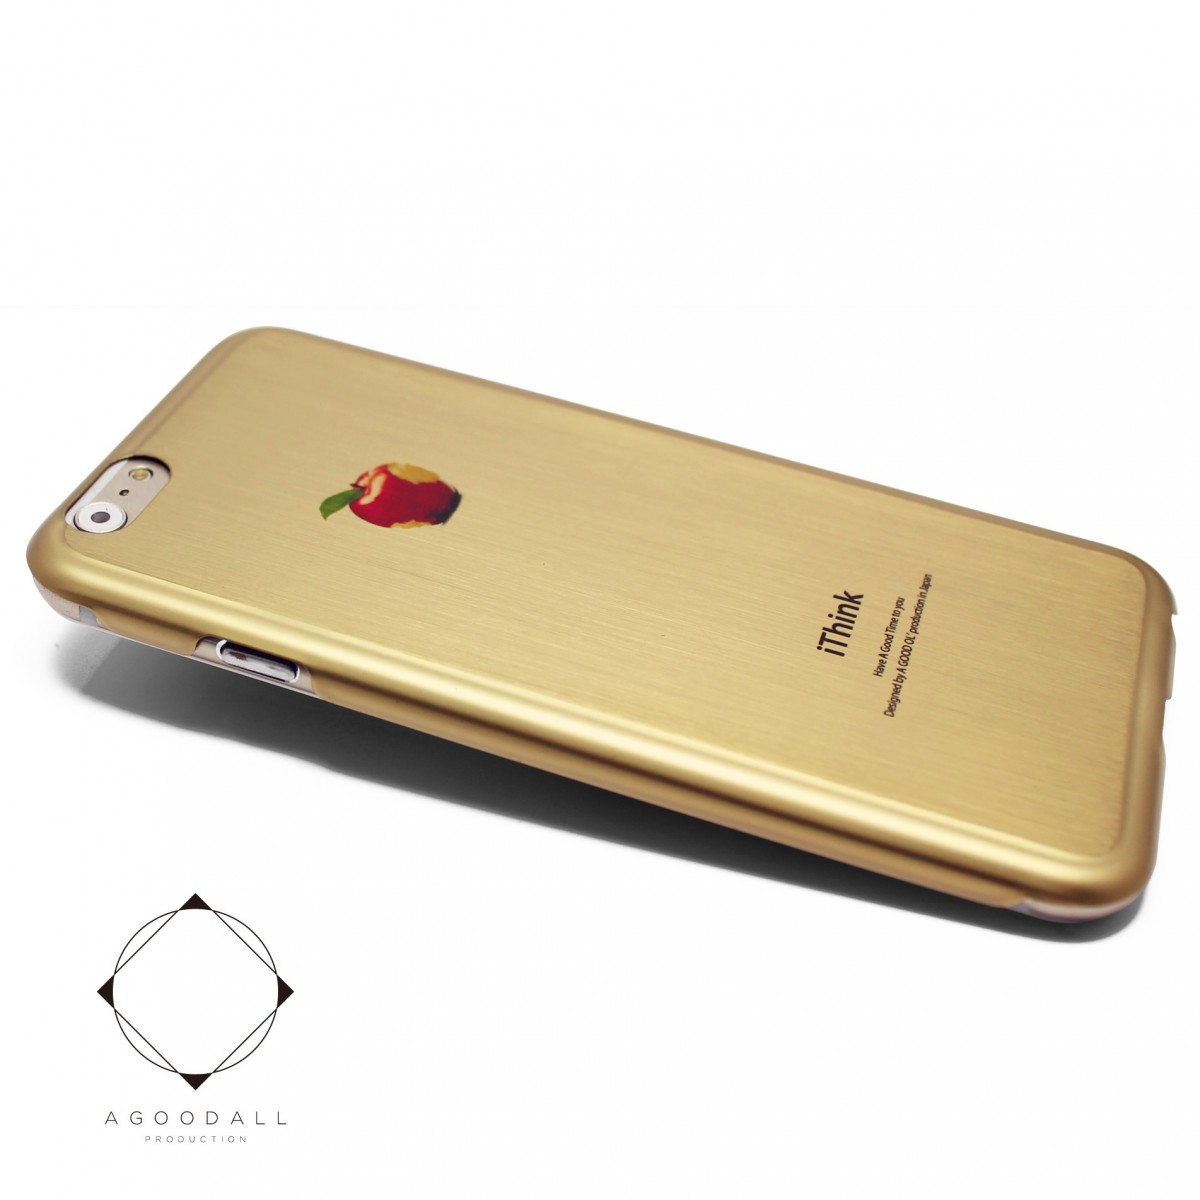 Iphone6 Iphone6sケース 4 7寸 合金チタンケースiphoneカバー マットゴールド リンゴ Iichi ハンドメイド クラフト作品 手仕事品の通販